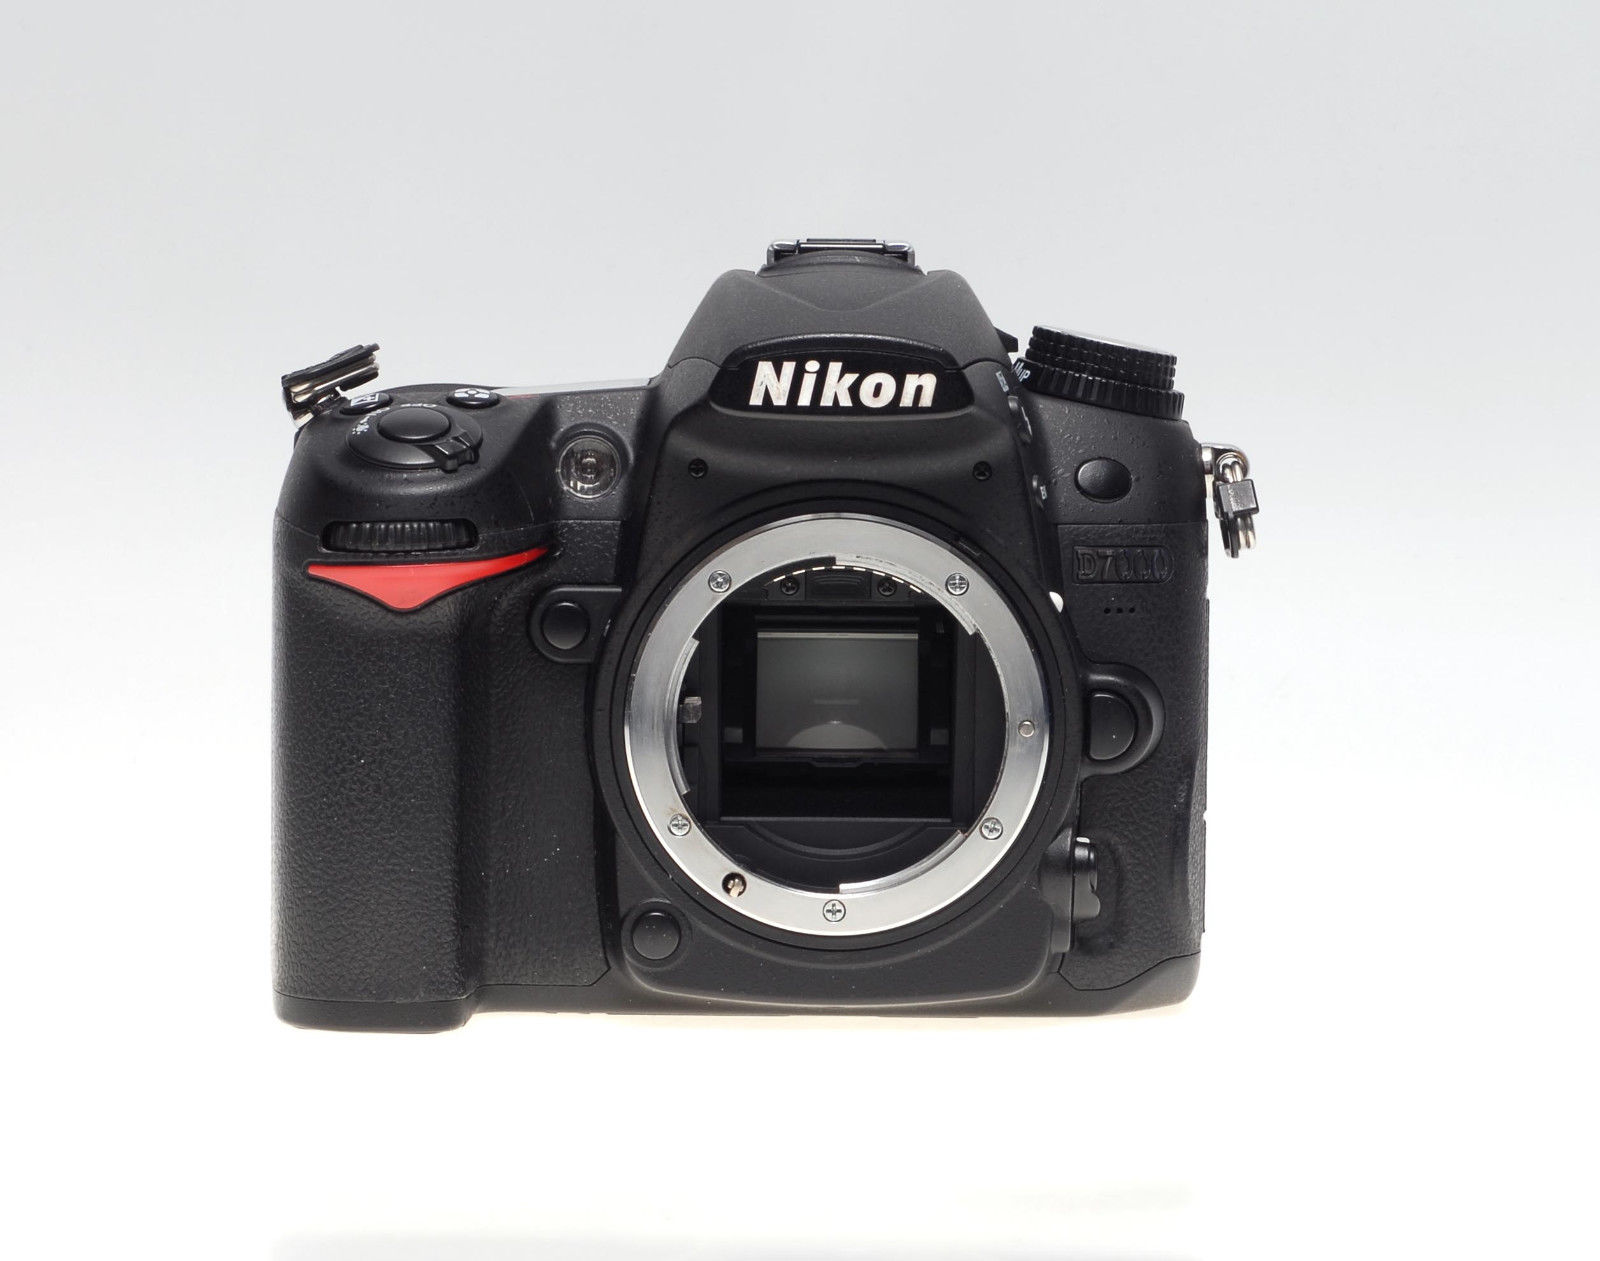 Nikon D7000 - digitale SLR Kamera - Body - gebraucht - NUR 2573 AUSLÖSUNGEN